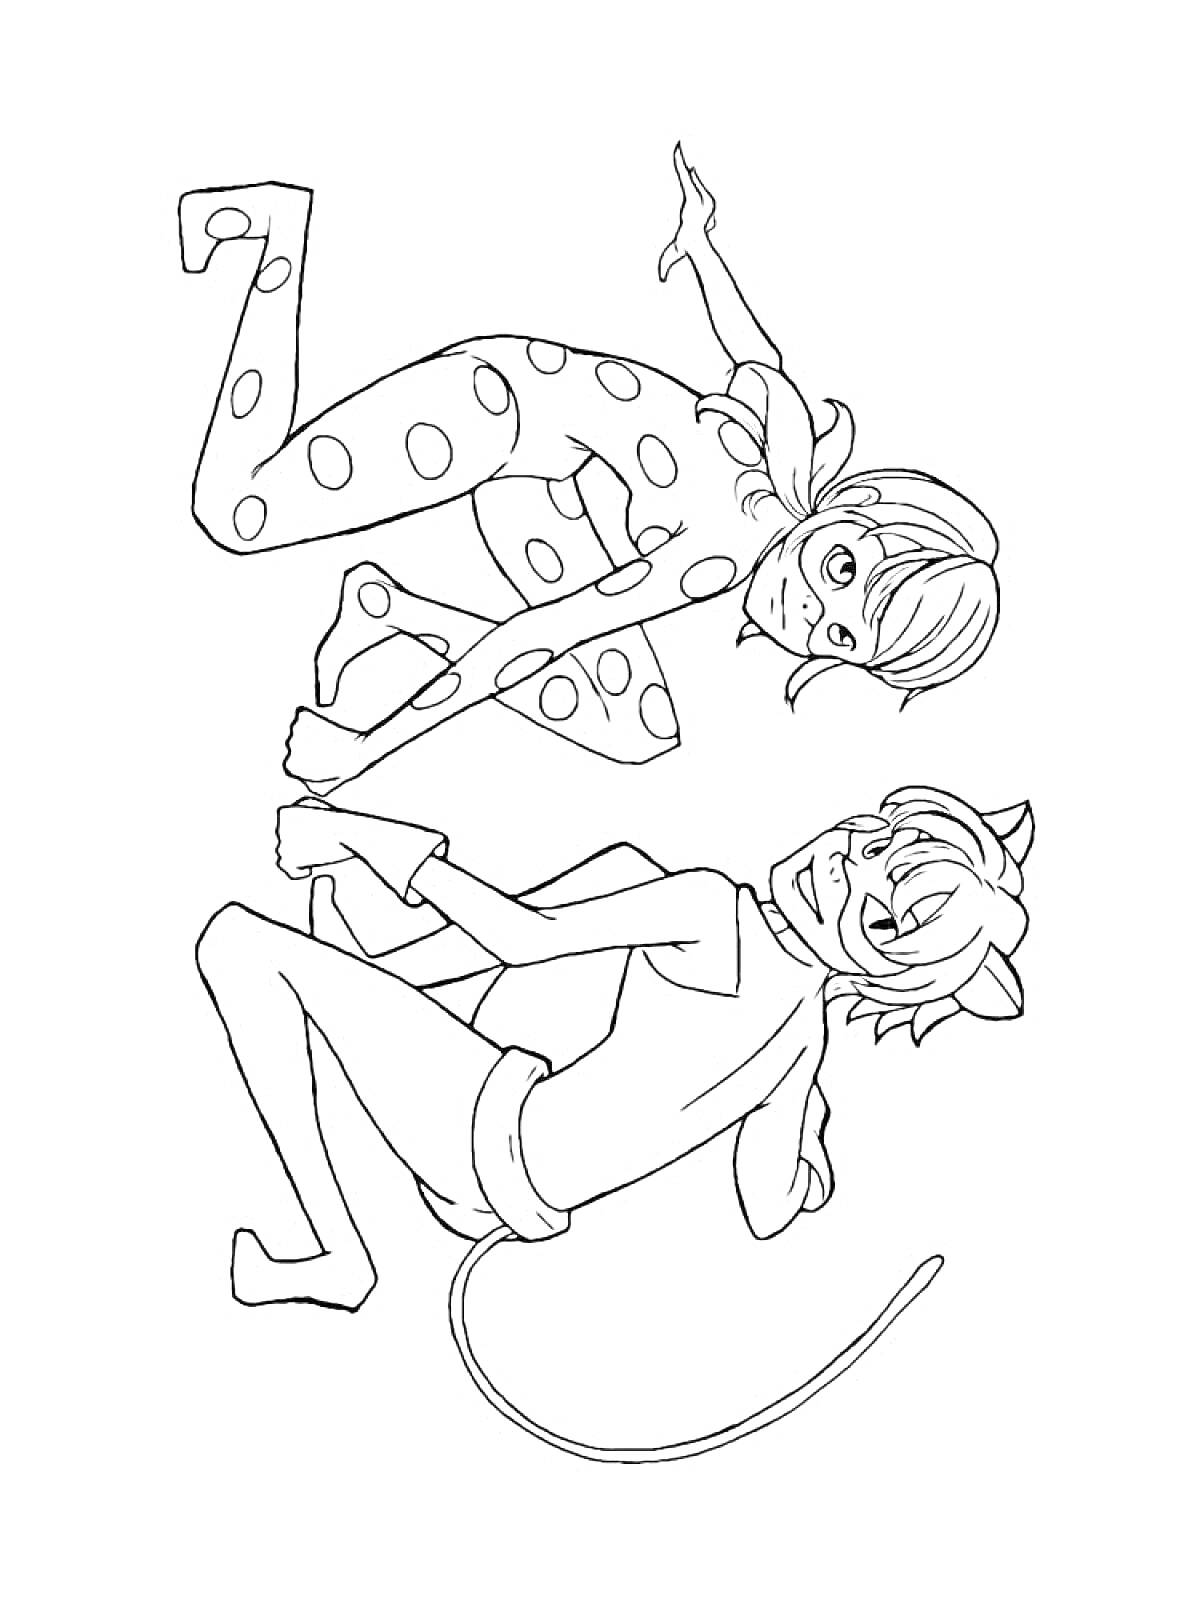 Раскраска Леди Баг и Супер Кот, стоящие спиной к спине, в костюмах супергероев